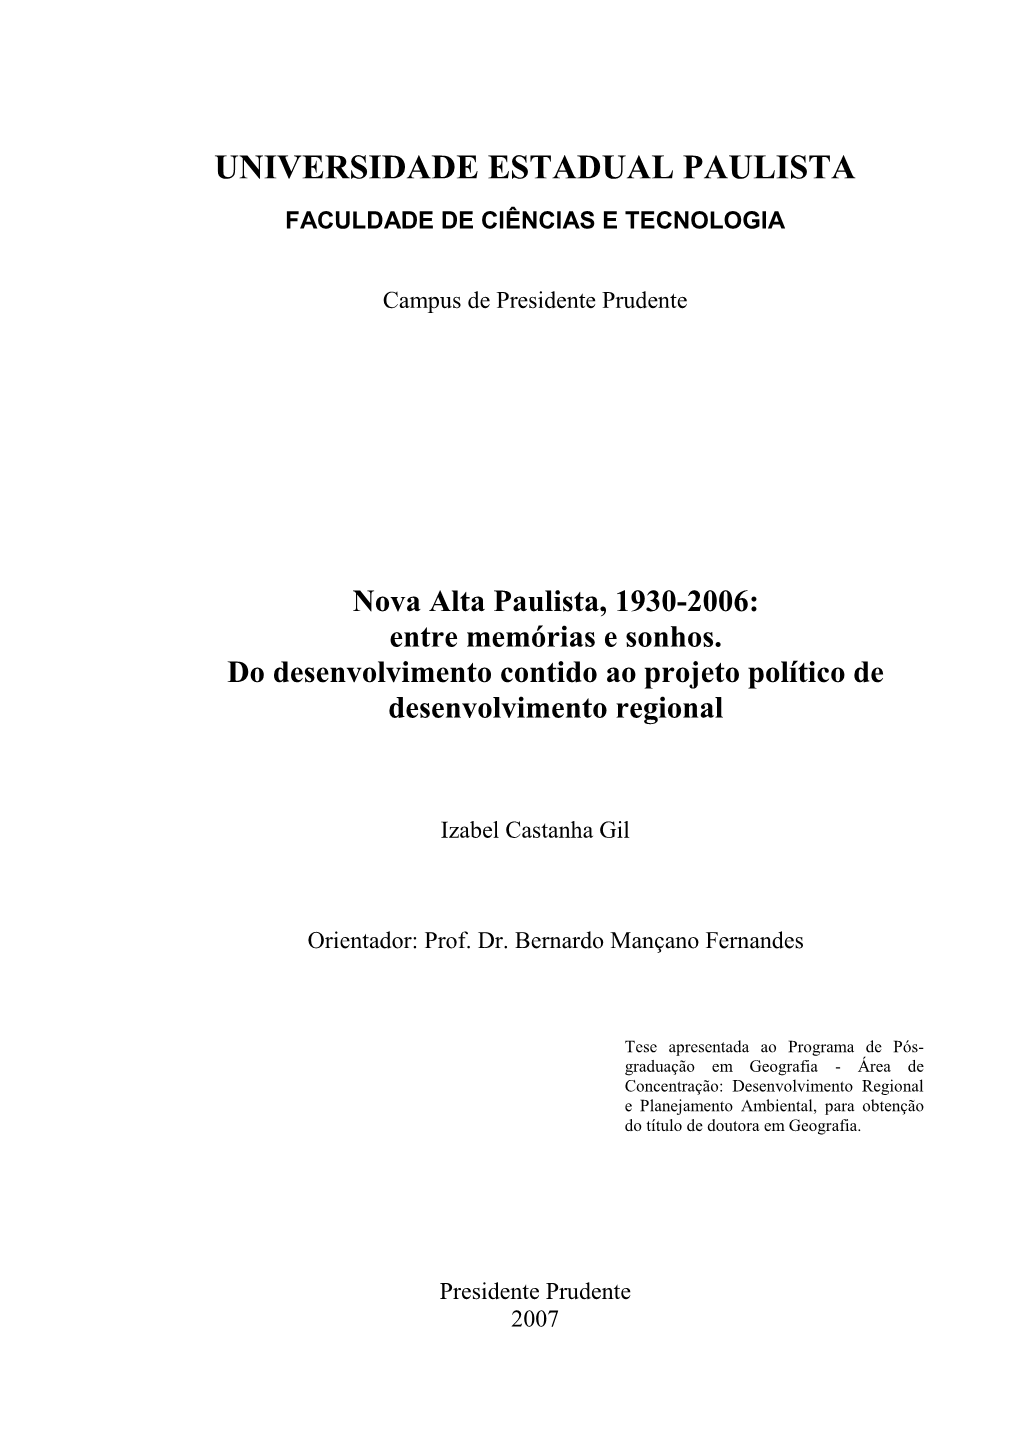 Nova Alta Paulista, 1930-2006: Entre Memórias E Sonhos